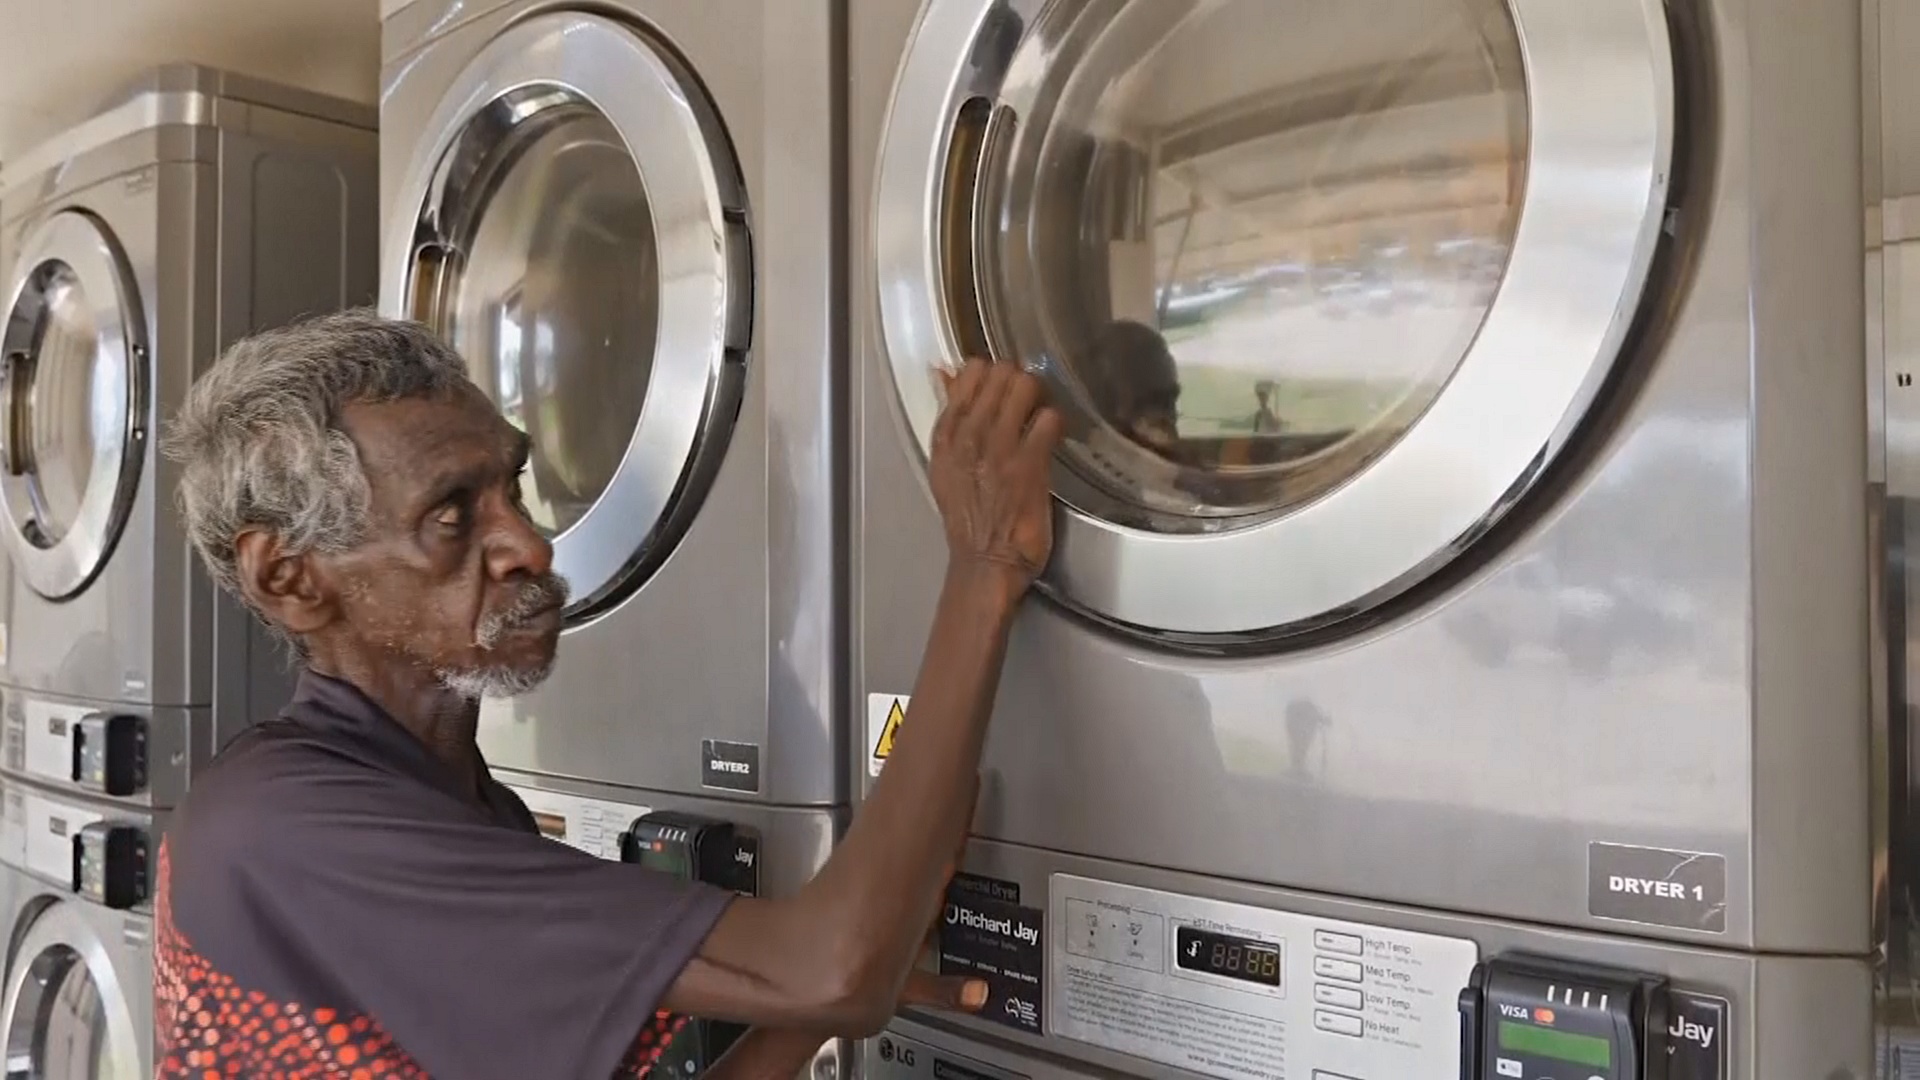 Как бесплатные стиральные машинки спасают жизни